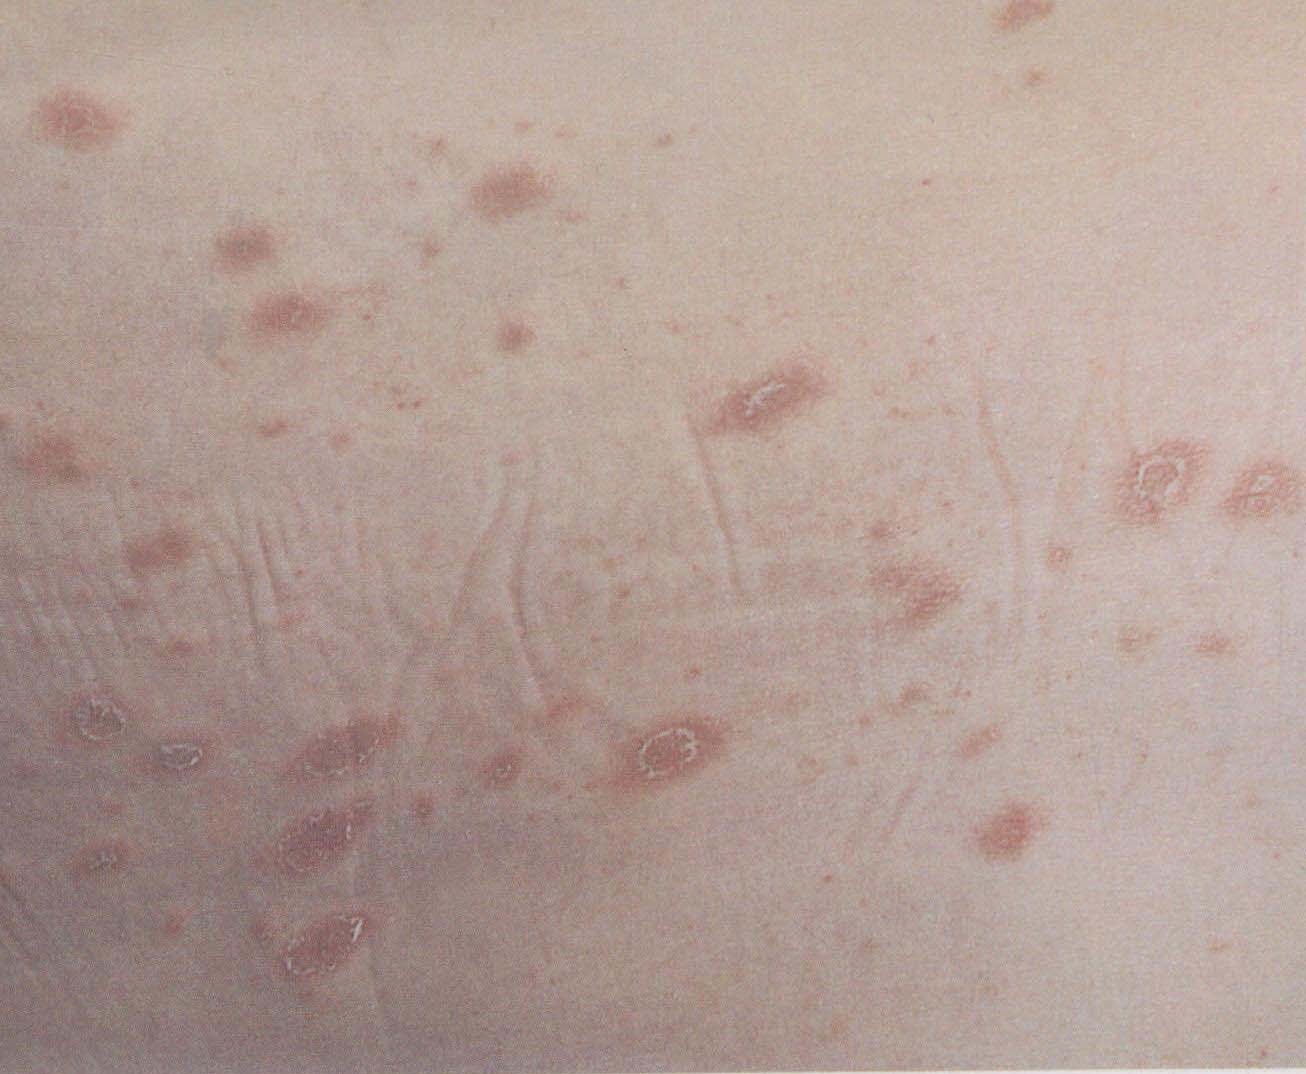 患者有丘疹样结节，皮肤科医生判断为丘疹性瘙痒